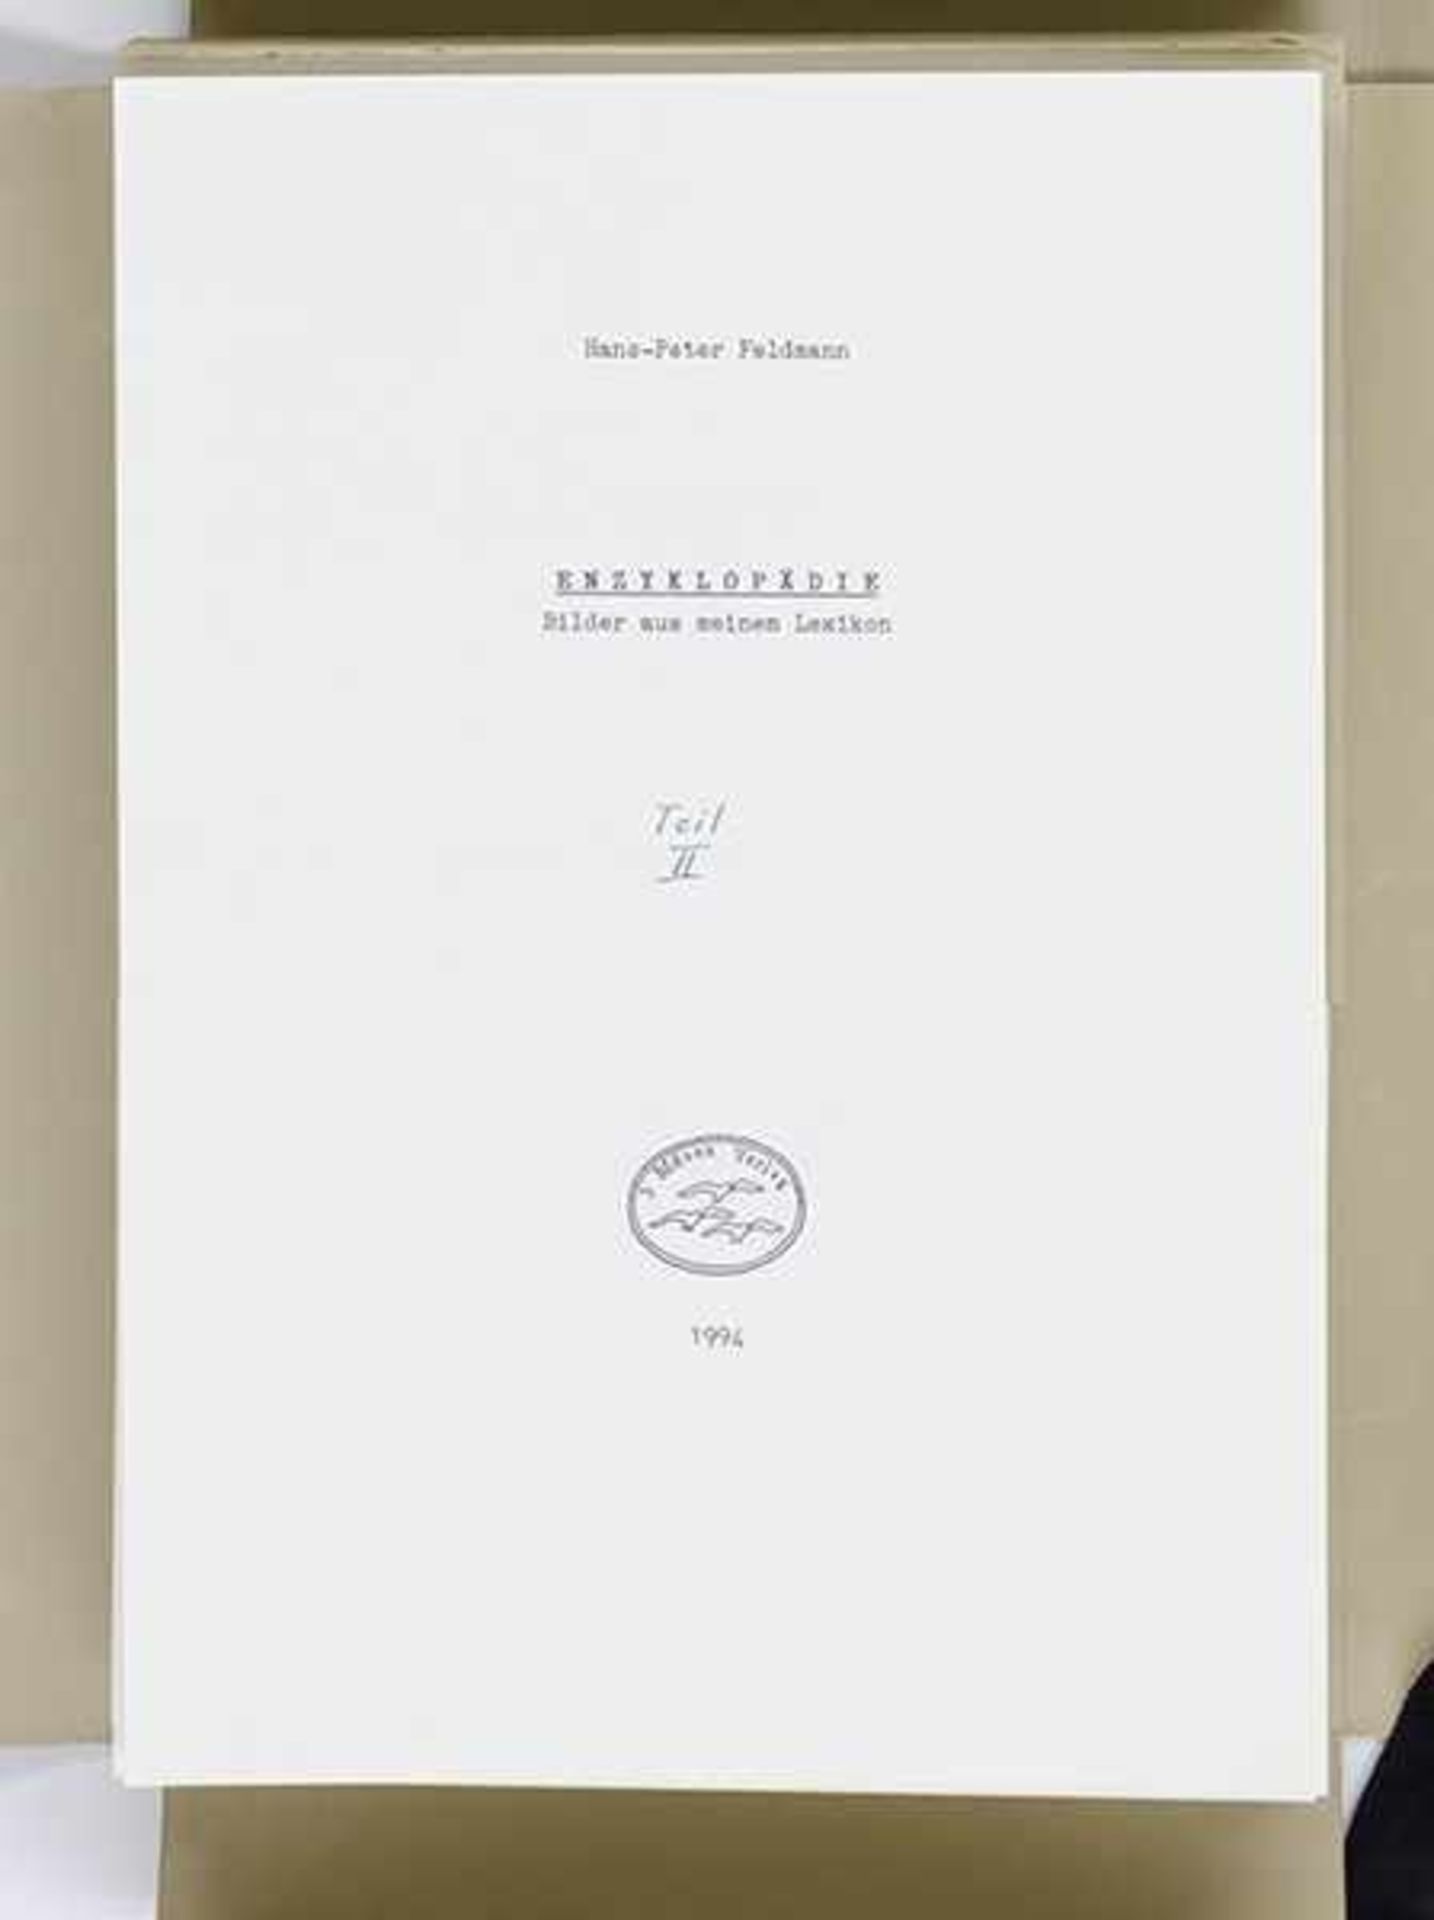 Feldmann, Hans-Peter. Enzyklopädie. Bilder aus meinem Lexikon. 2 Bände. Mit insgesamt 366 montierten - Bild 6 aus 7